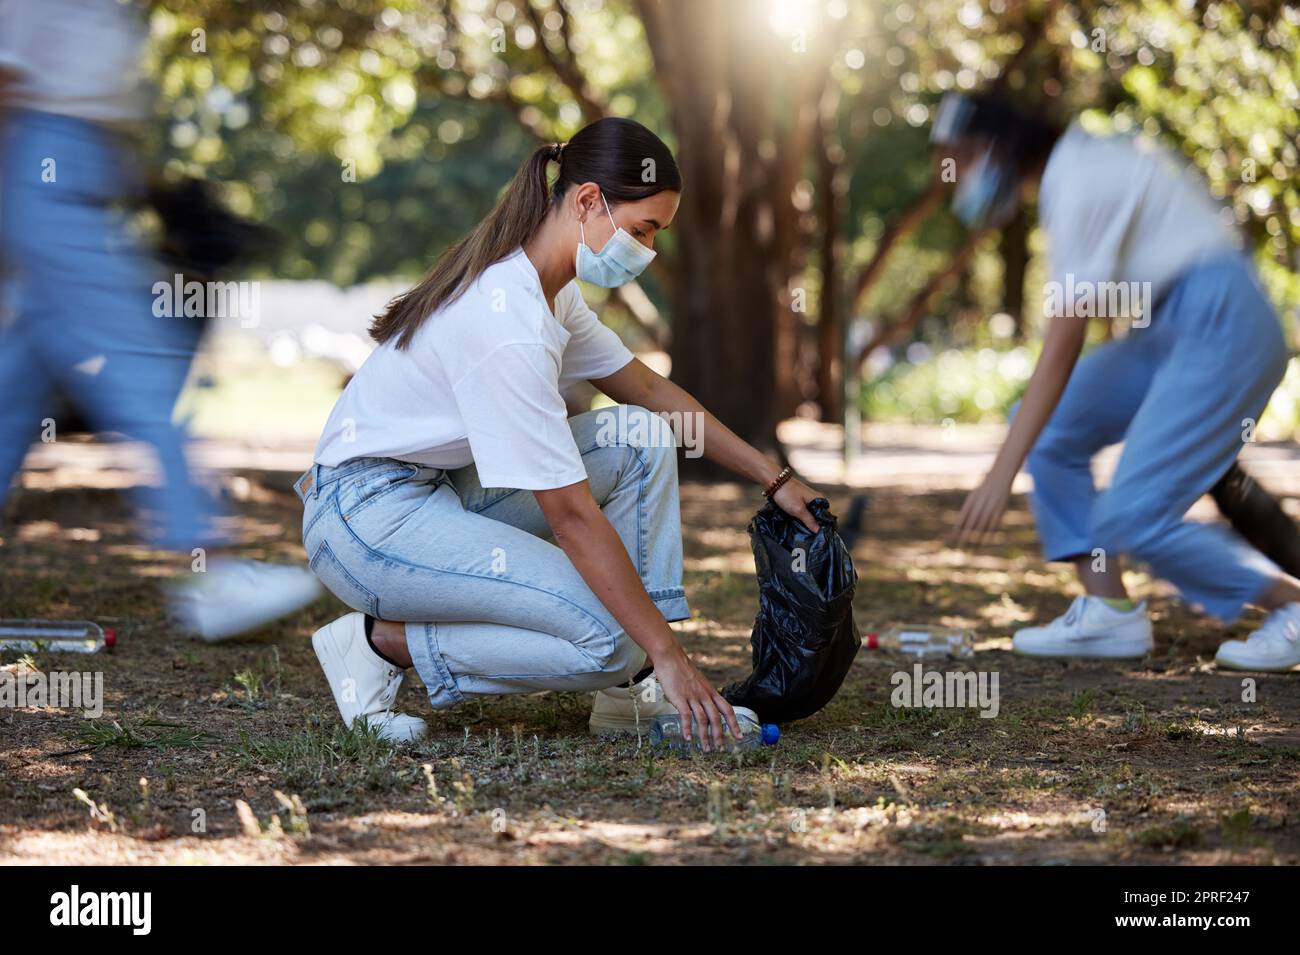 Faire du bénévolat, recycler et réduire les déchets en ramassant la litière, la saleté et les déchets à l'extérieur dans un parc pendant le covid. Une jeune équipe de militantes des ONG qui nettoient l'environnement pendant la pandémie de covid19 Banque D'Images